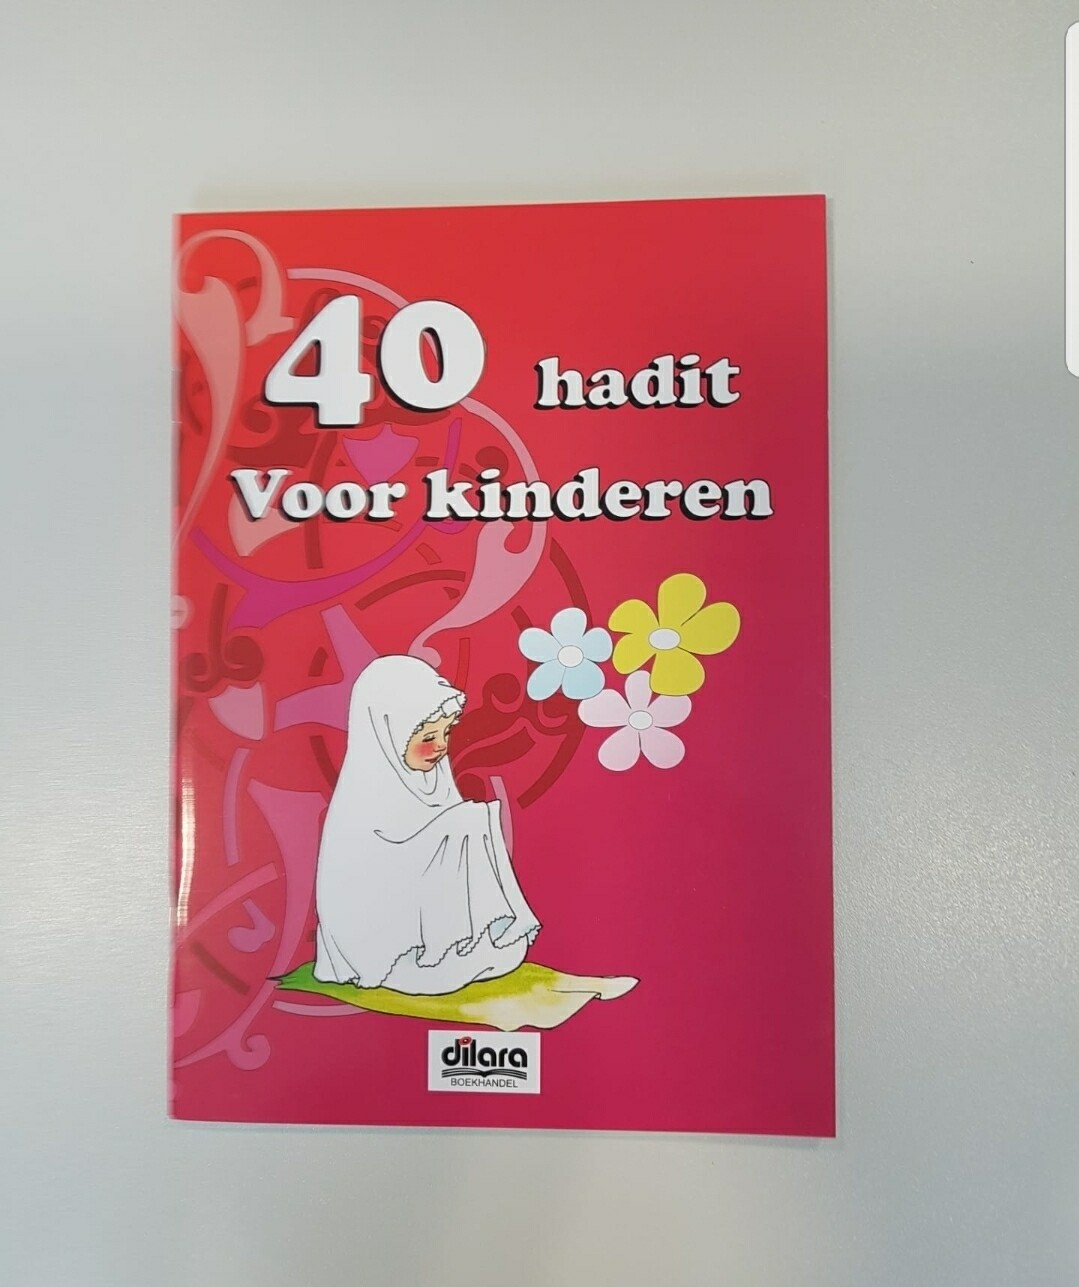 40 hadith voor kinderen